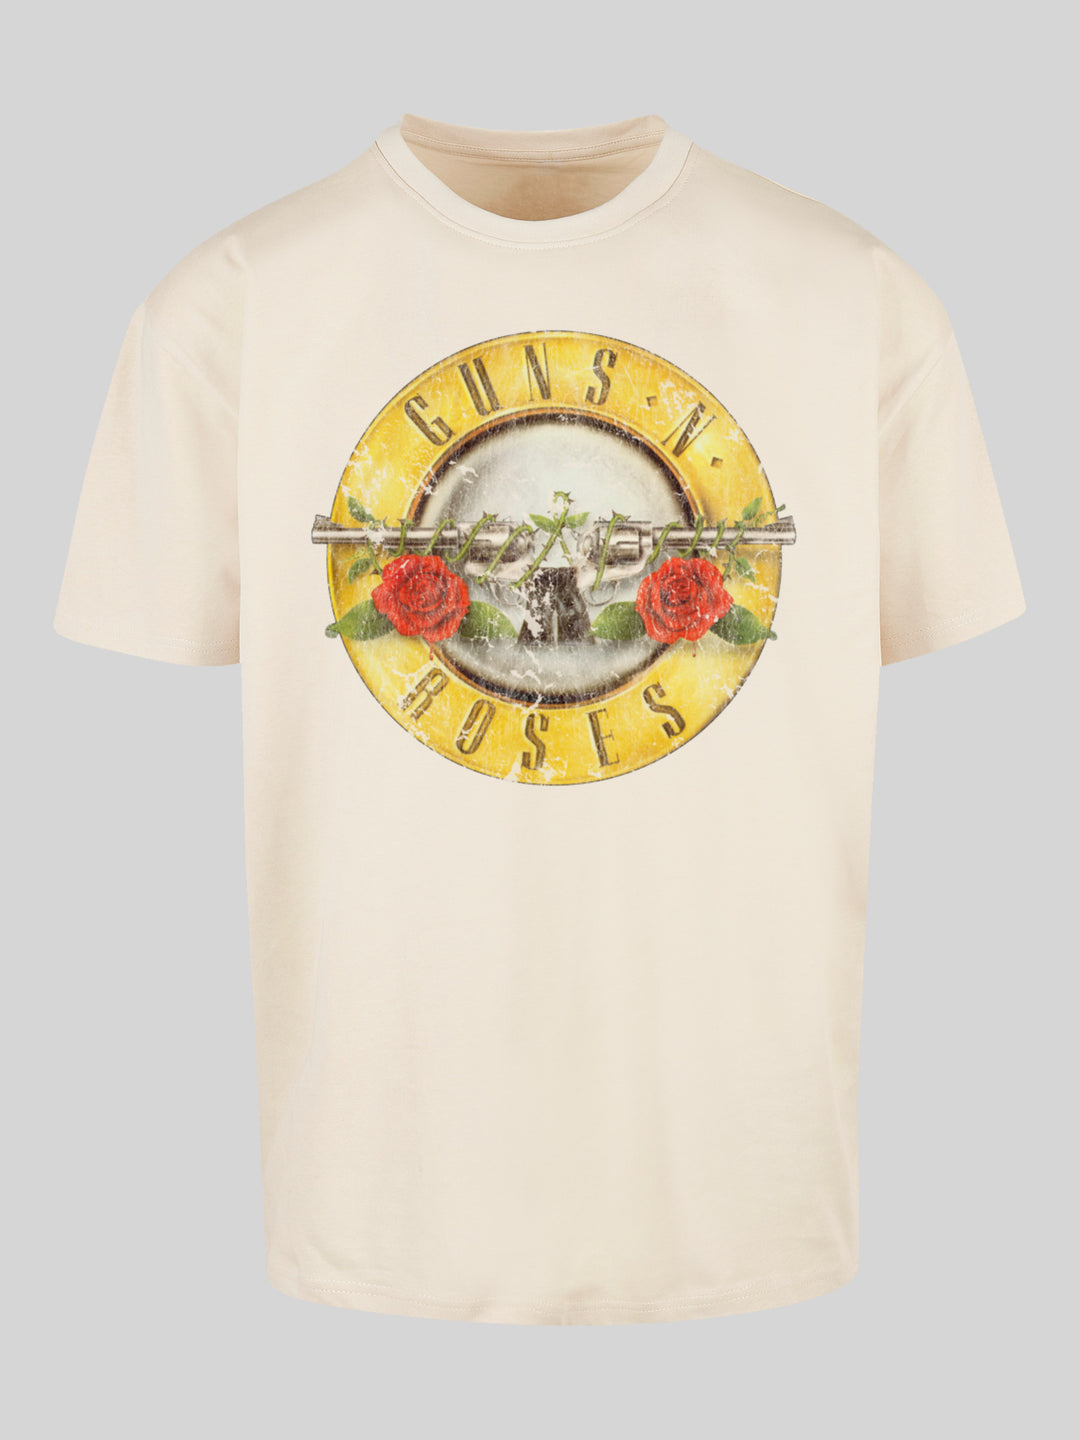 Guns 'n' Roses Vintage Classic Logo| Oversize Herren T-Shirt